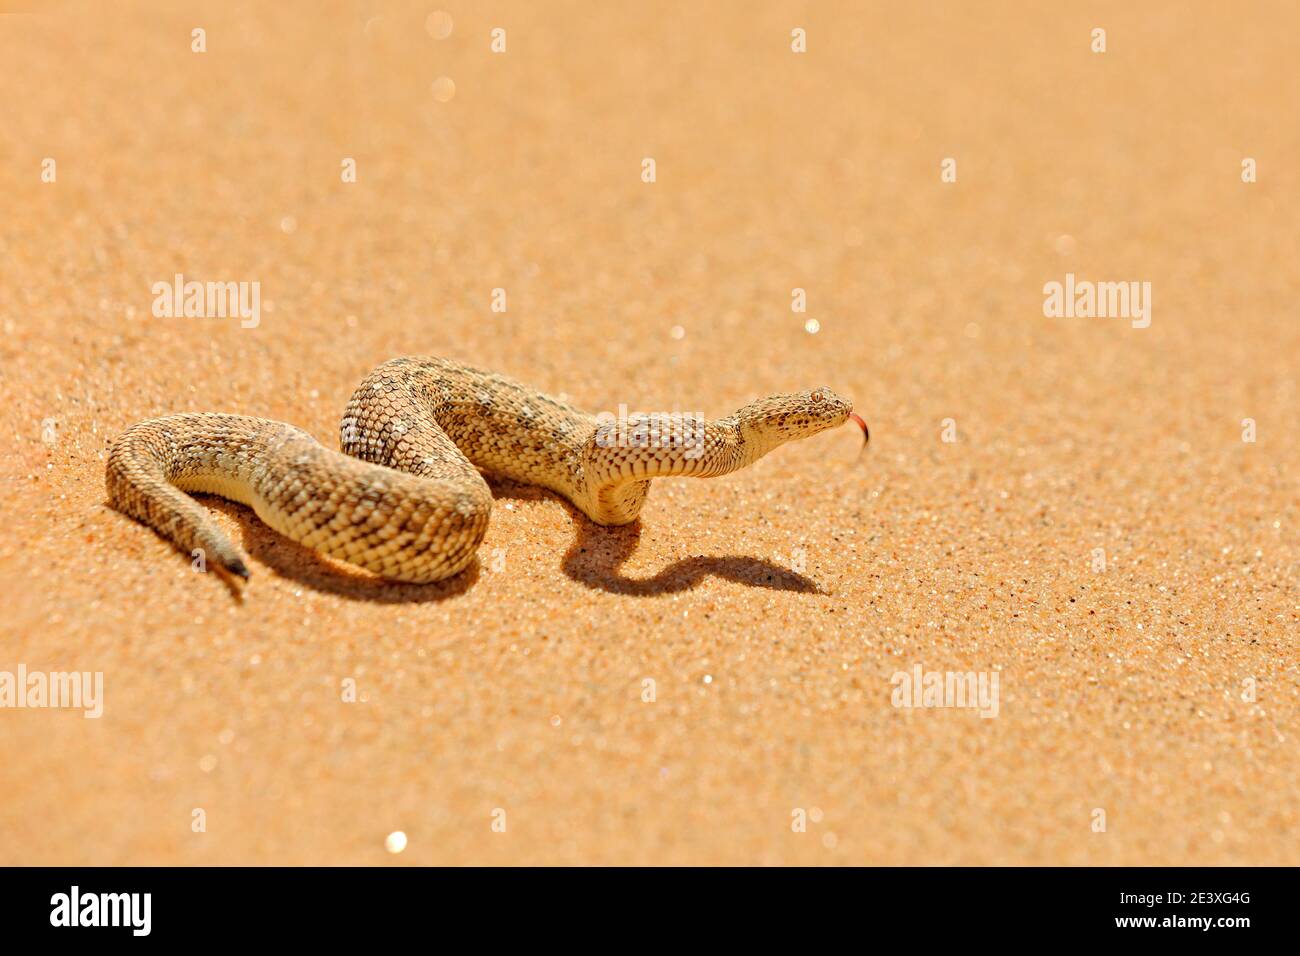 Bitis peringueyi, Péringueys Adder, Giftnatter aus der namibischen Sandwüste. Kleine Viper in der Natur Lebensraum, Namib-Naukluft Park in Afrika. Wildtiere Stockfoto